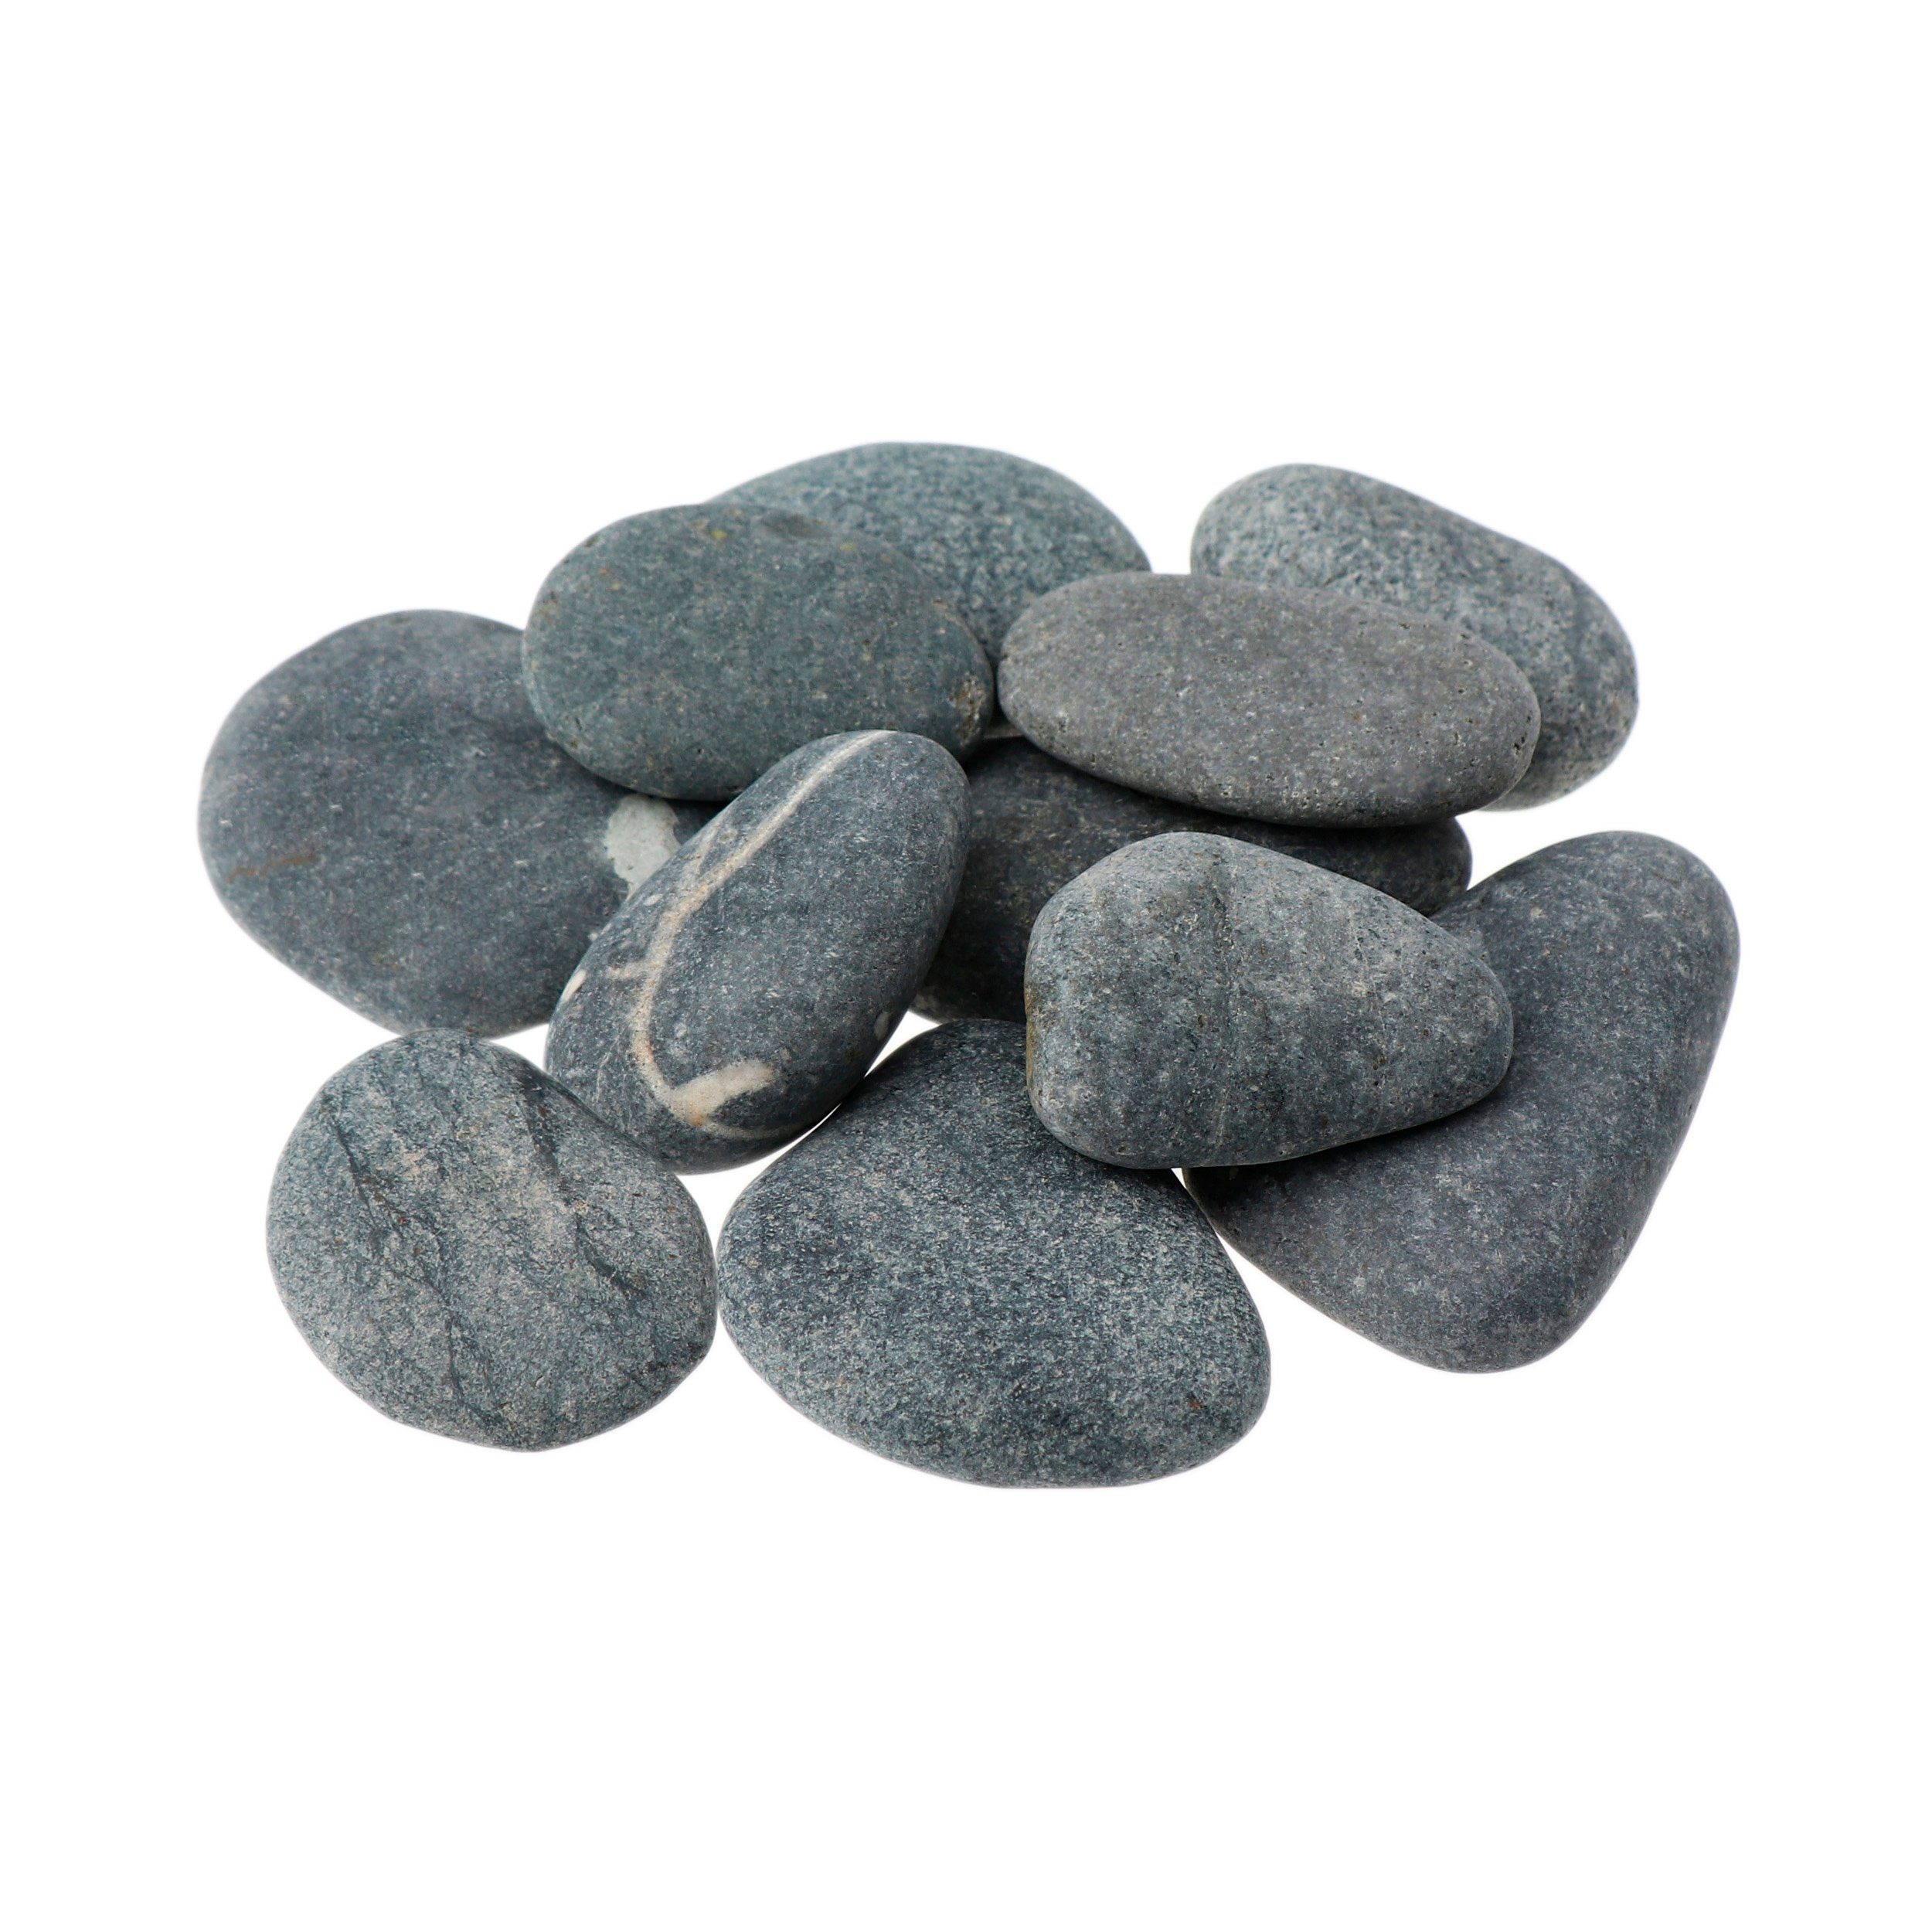 NKlaus Mineralstein 500g Hot Stone 50 - 60mm Massagesteine Wellness Entspannungsstein vulk